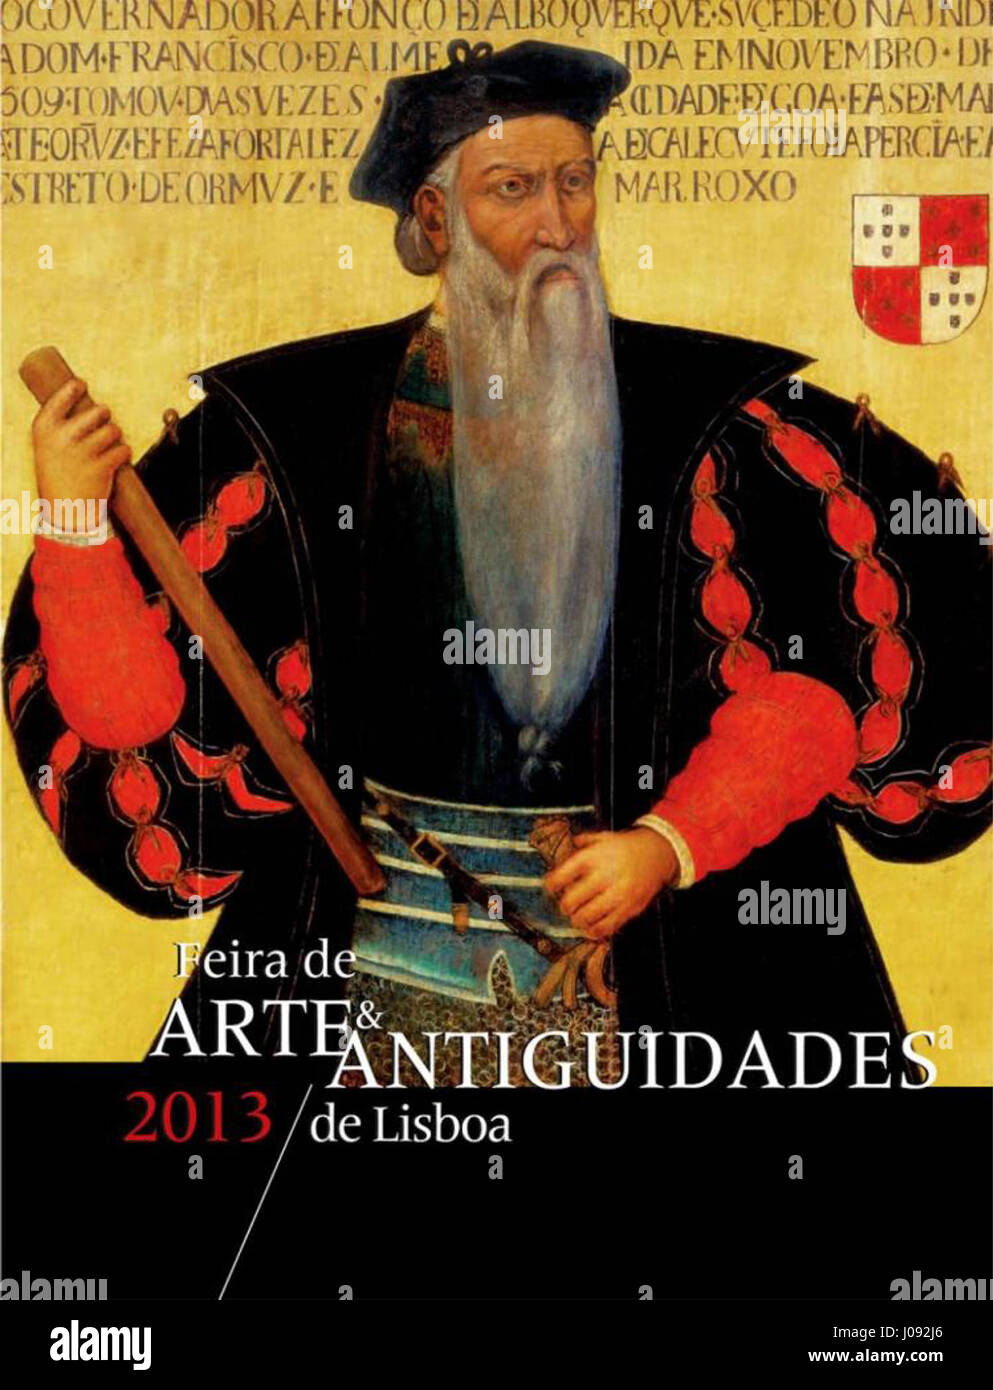 Catálogo da Feira de Arte e Antiguidades - Abril 2013 Stock Photo